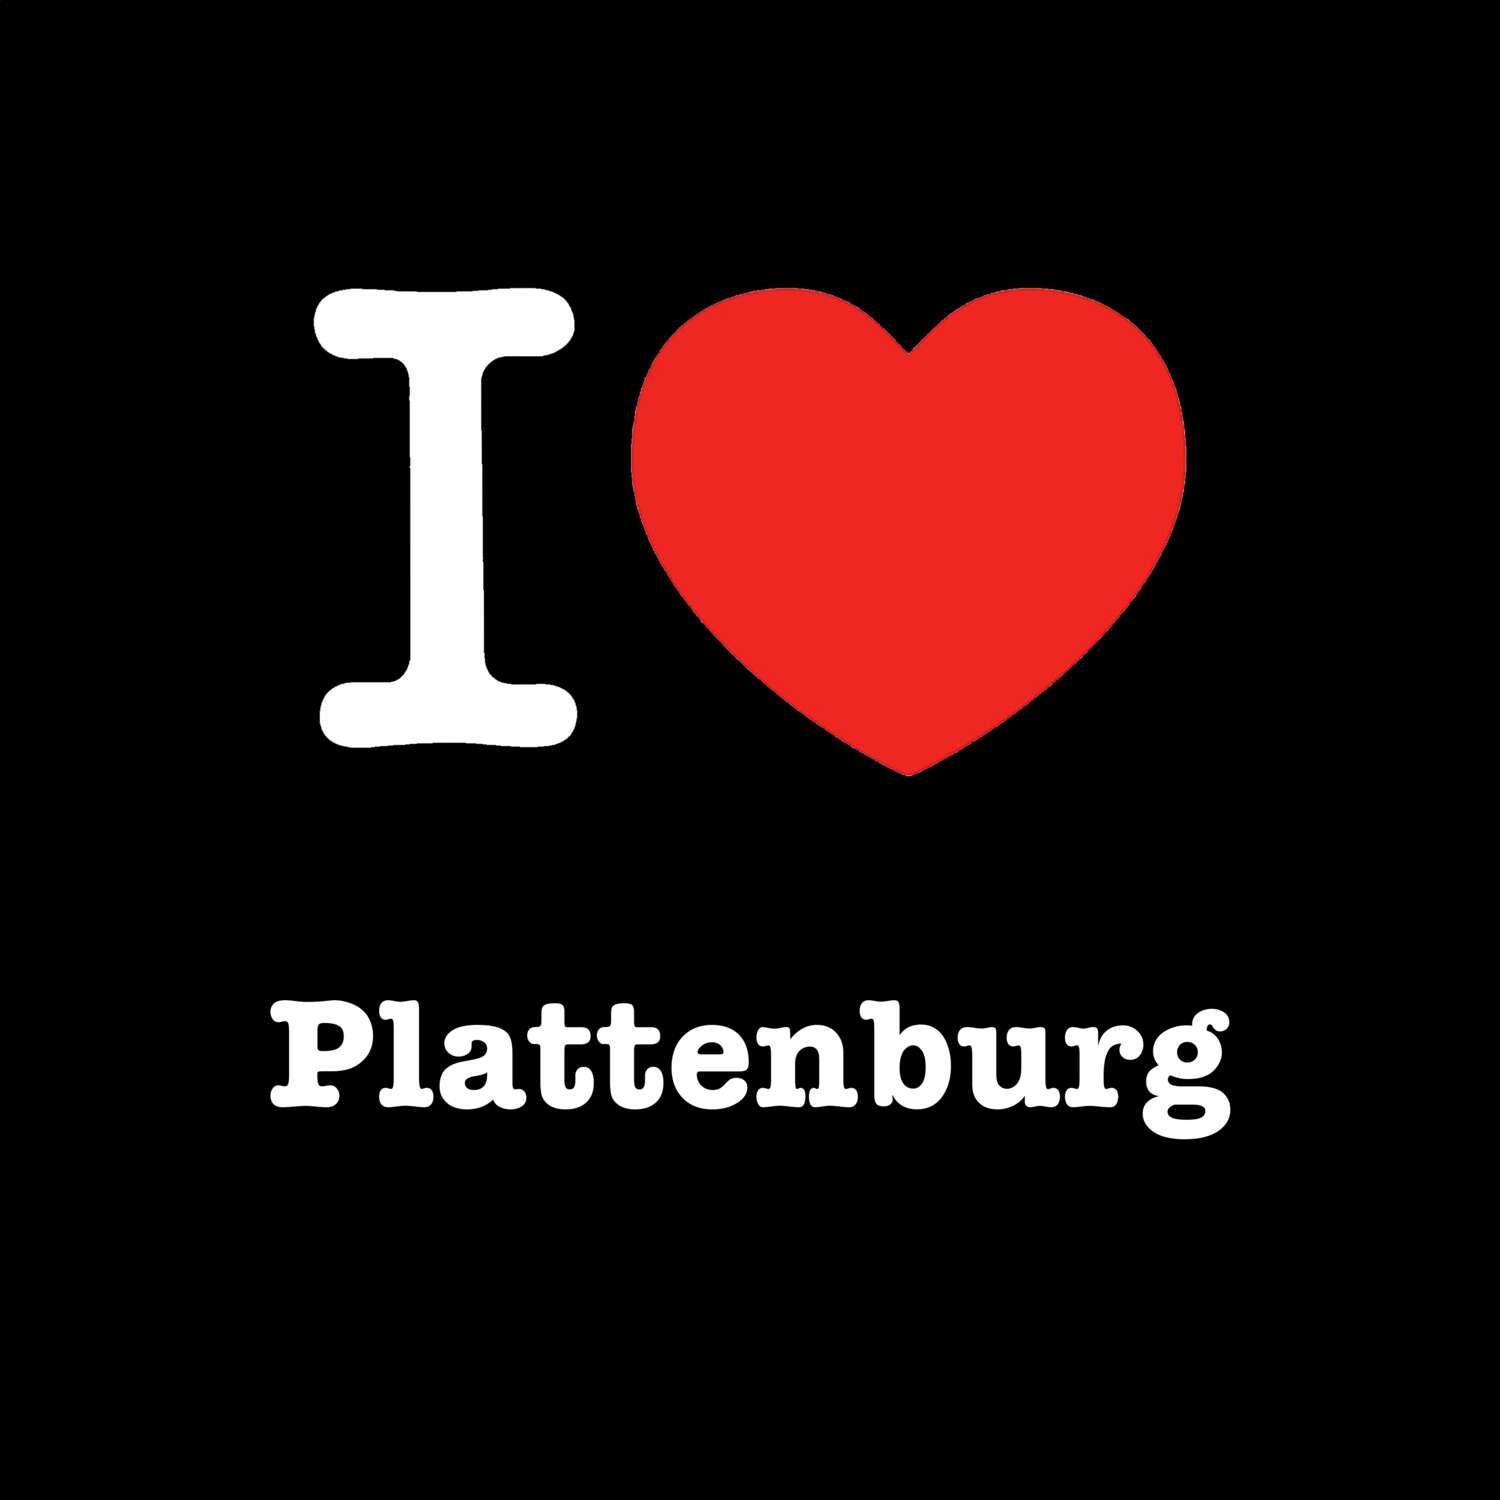 Plattenburg T-Shirt »I love«